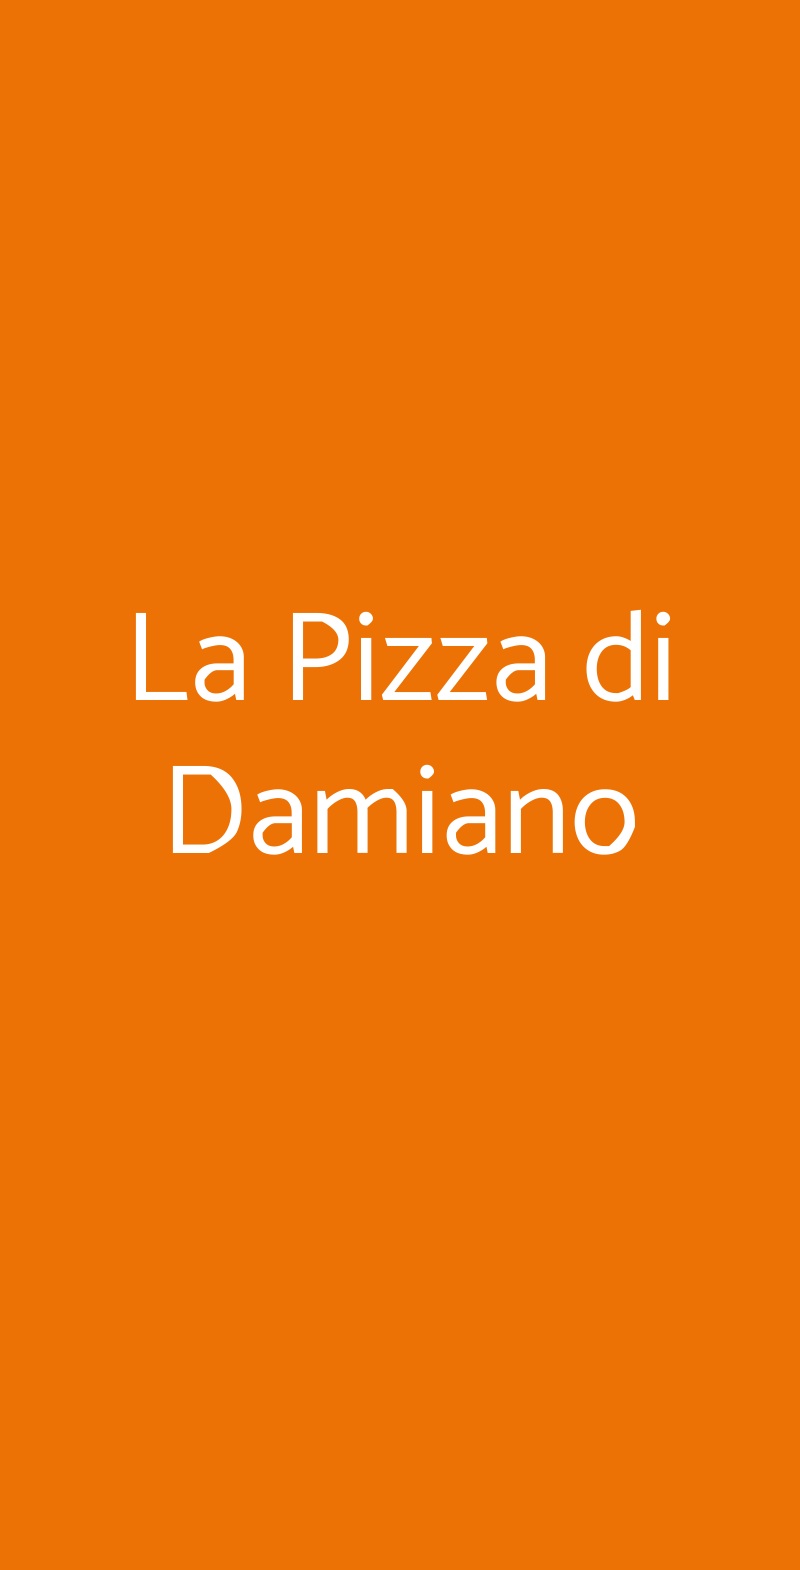 La Pizza di Damiano Bologna menù 1 pagina